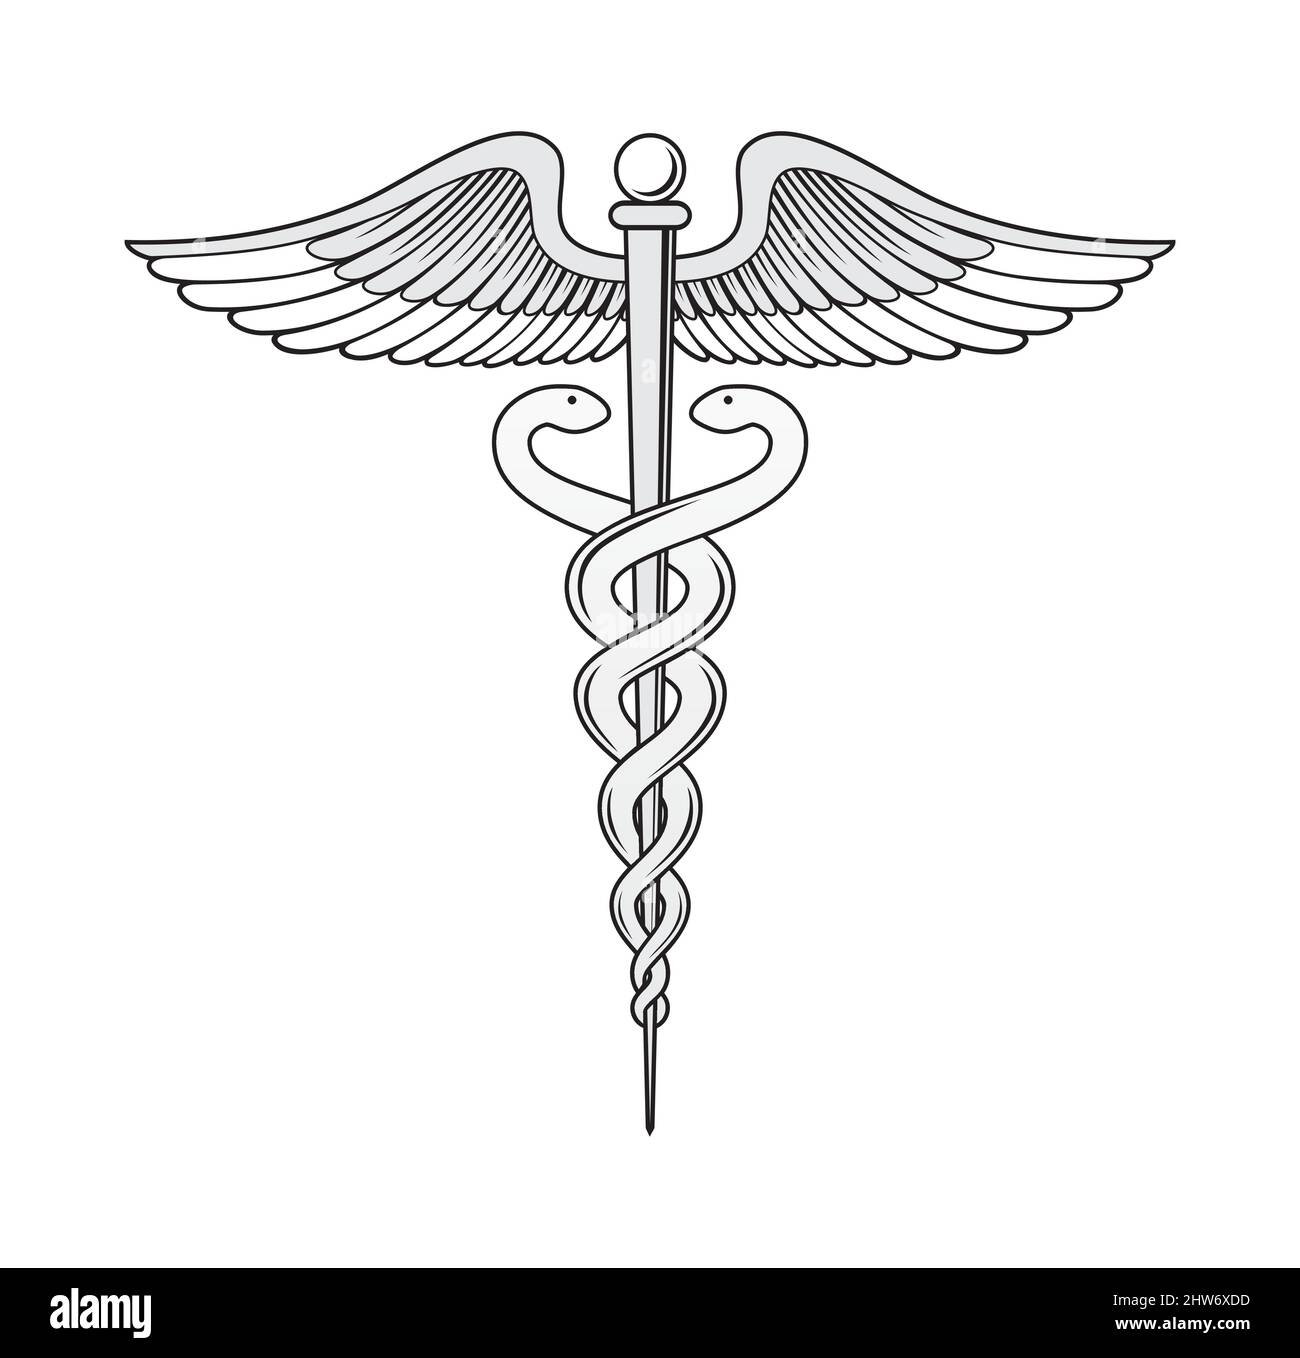 Medizinische caduceus Symbol Design Illustration Vektor eps Format , geeignet für Ihre Design-Bedürfnisse, Logo, Illustration, Animation, etc. Stock Vektor